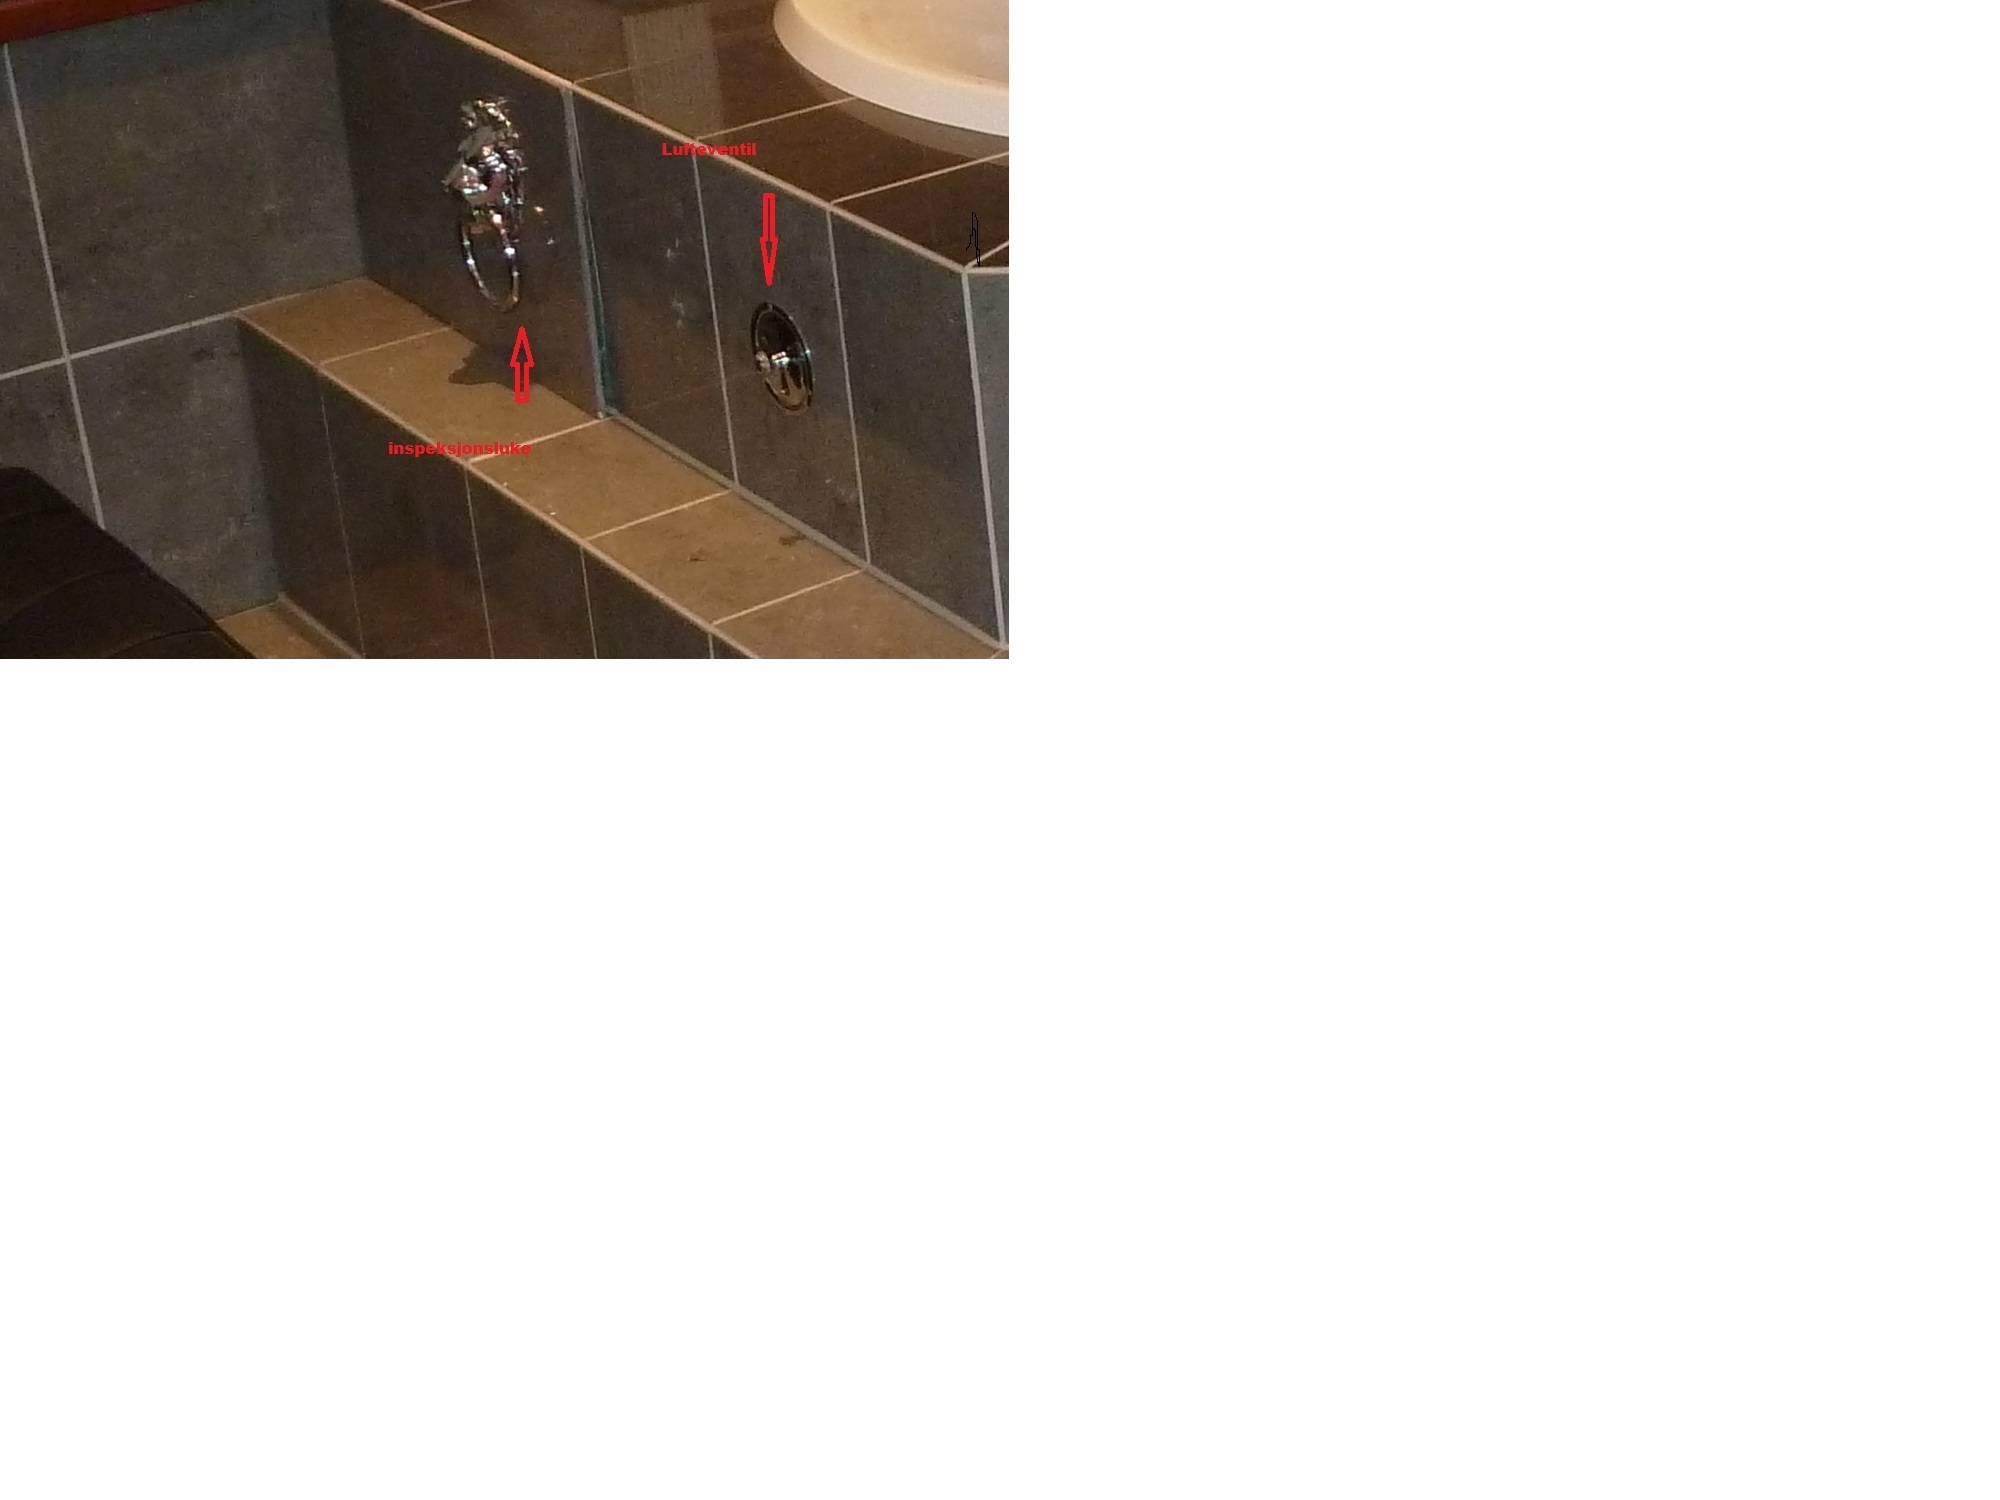 Montering av dusjkar (bilder) - inspeksjonsluke.jpg - gggre